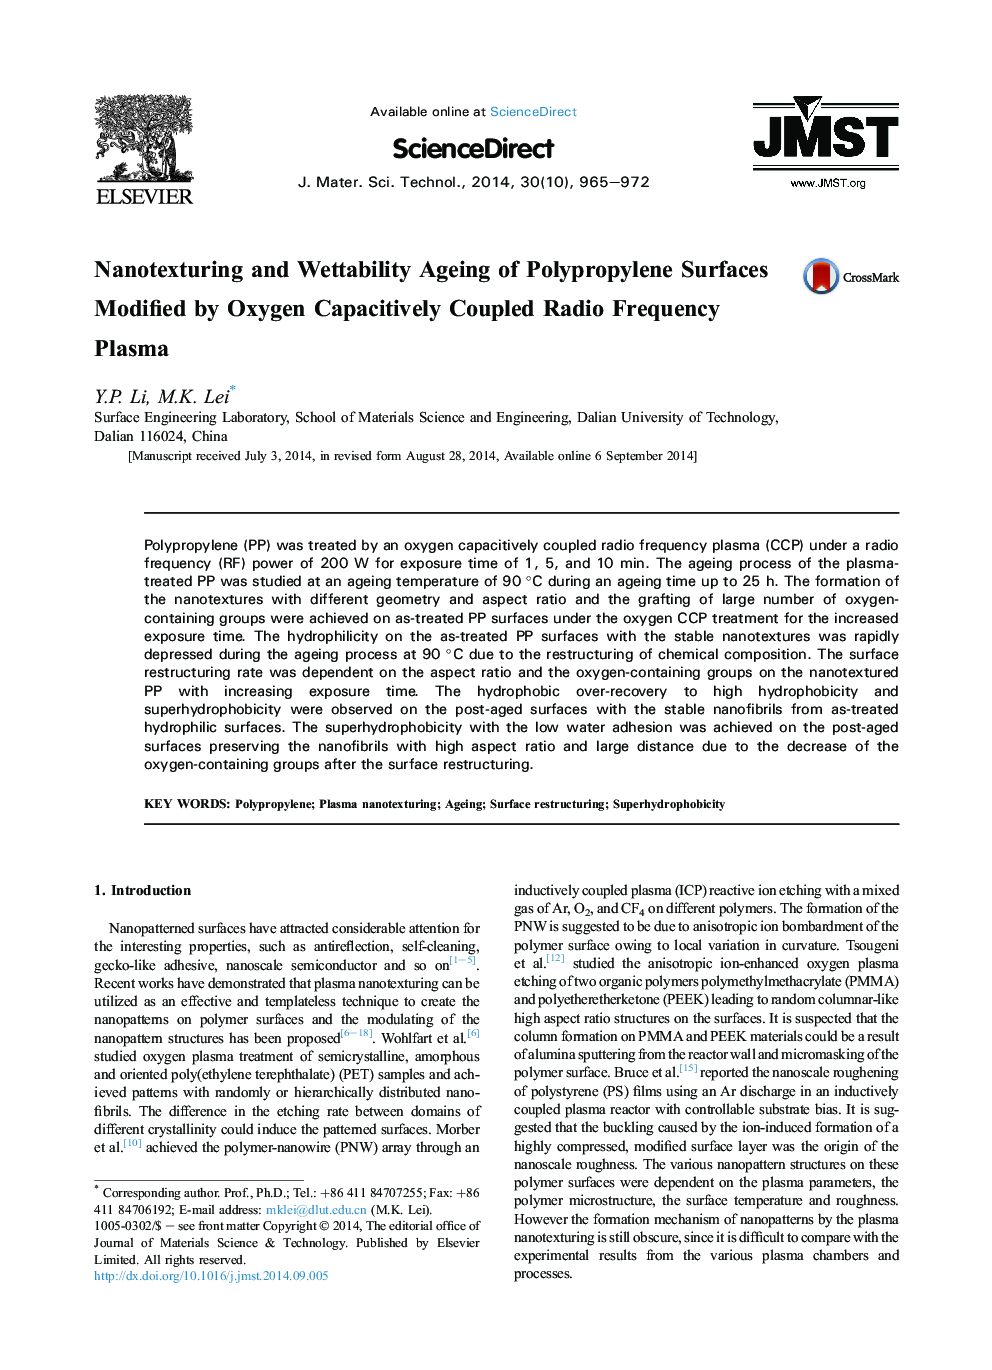 پدید آمدن نانوکامپوزیتی و پاکسازی پلت فرم های پلی پروپیلن اصلاح شده توسط اکسیژن پلاسمای فرکانس رادیویی با ظرفیت پذیری 